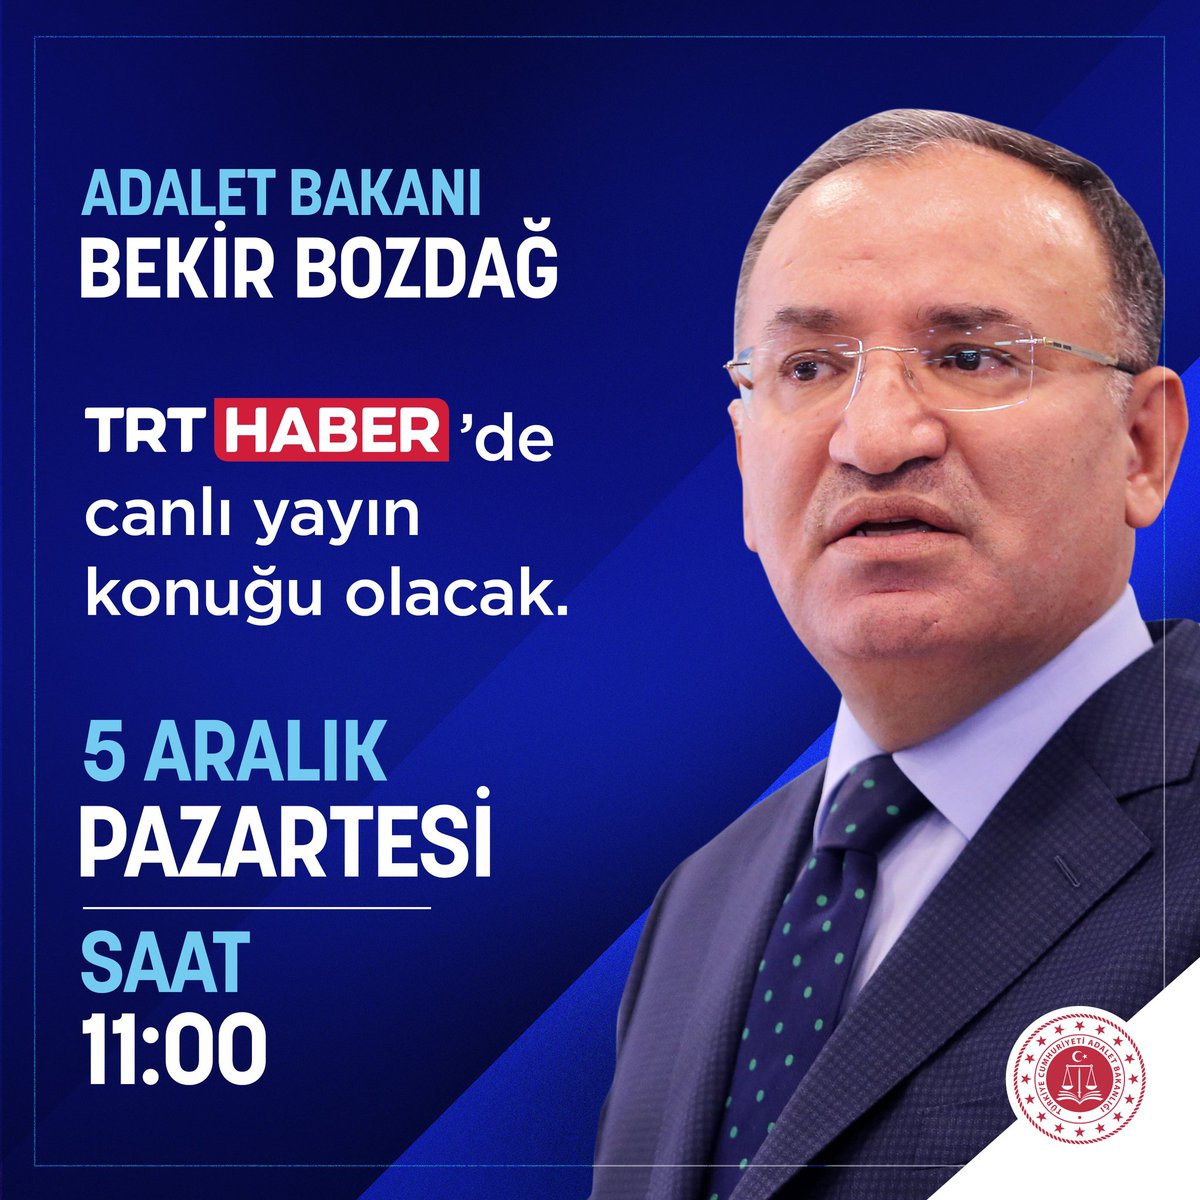 Adalet Bakanımız Sayın Bekir Bozdağ, @trthaber canlı yayınına konuk oluyor. 📺 TRT HABER 🗓️ 5 Aralık Pazartesi ⏰ 11:00 🤳 Sosyal medya hesaplarımızdan canlı yayını takip edebilirsiniz.